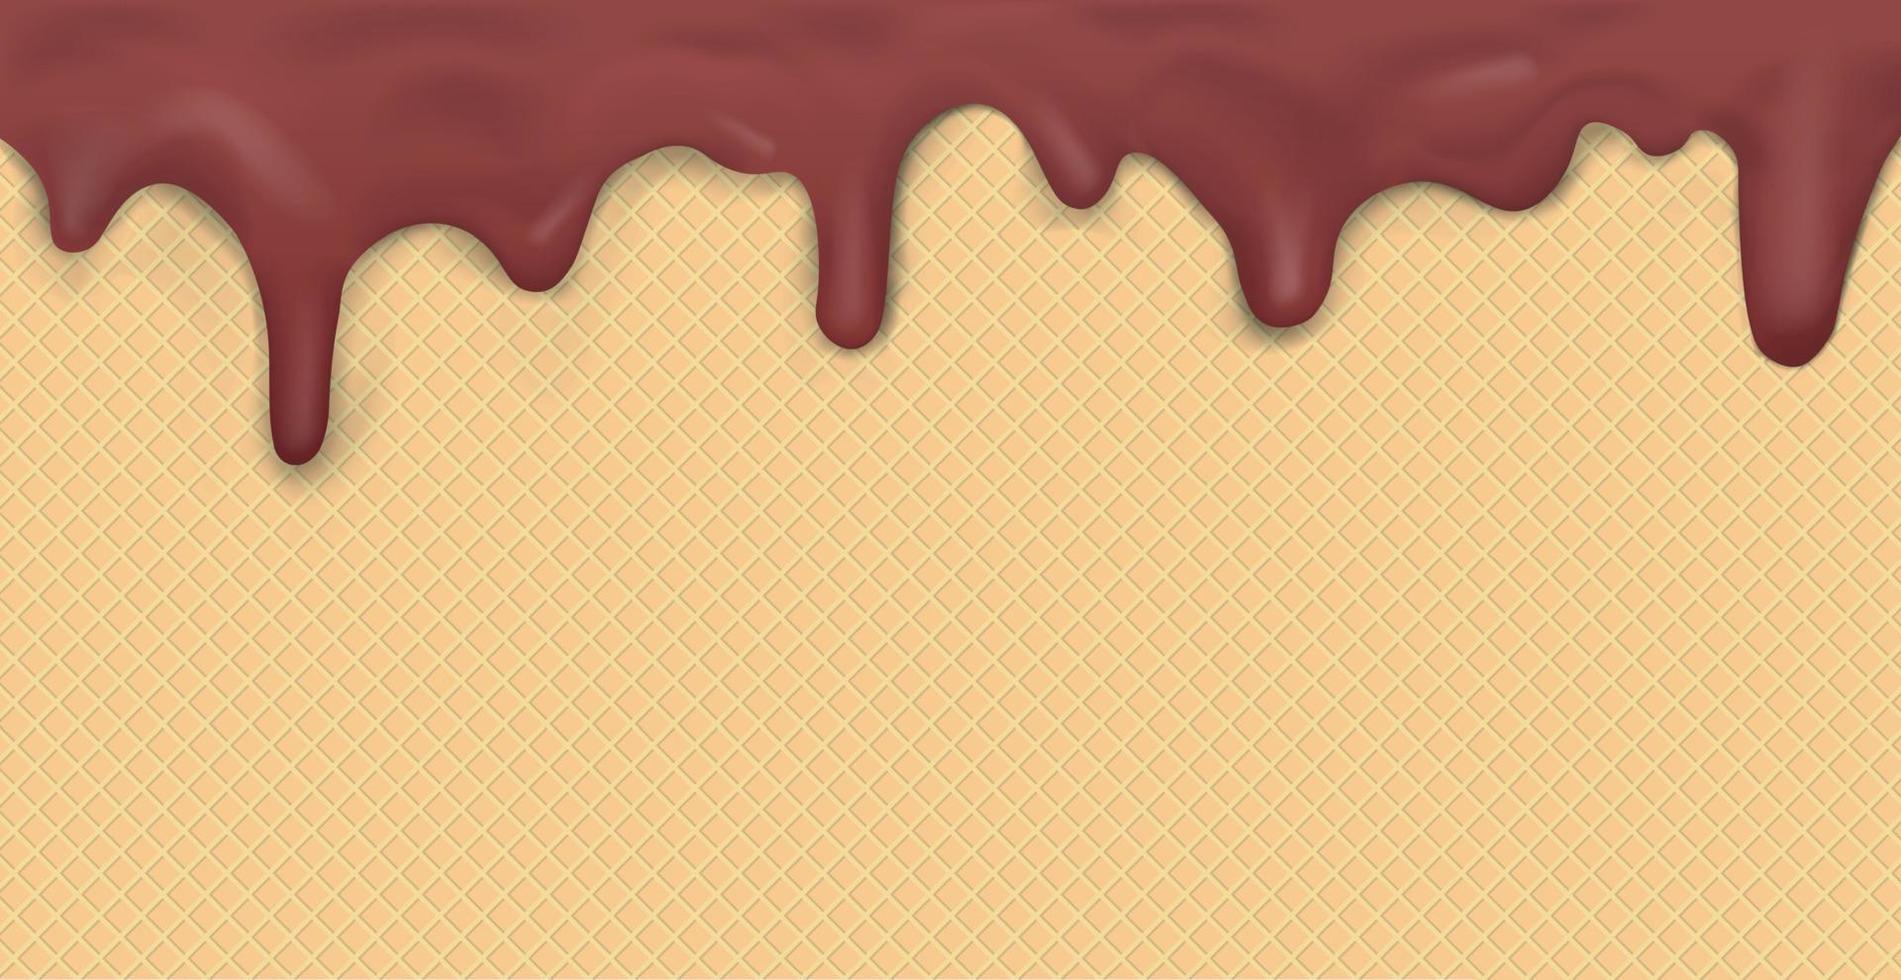 zoet naadloos panoramisch ijs room patroon met druipend donker chocola suikerglazuur en wafel structuur - vector